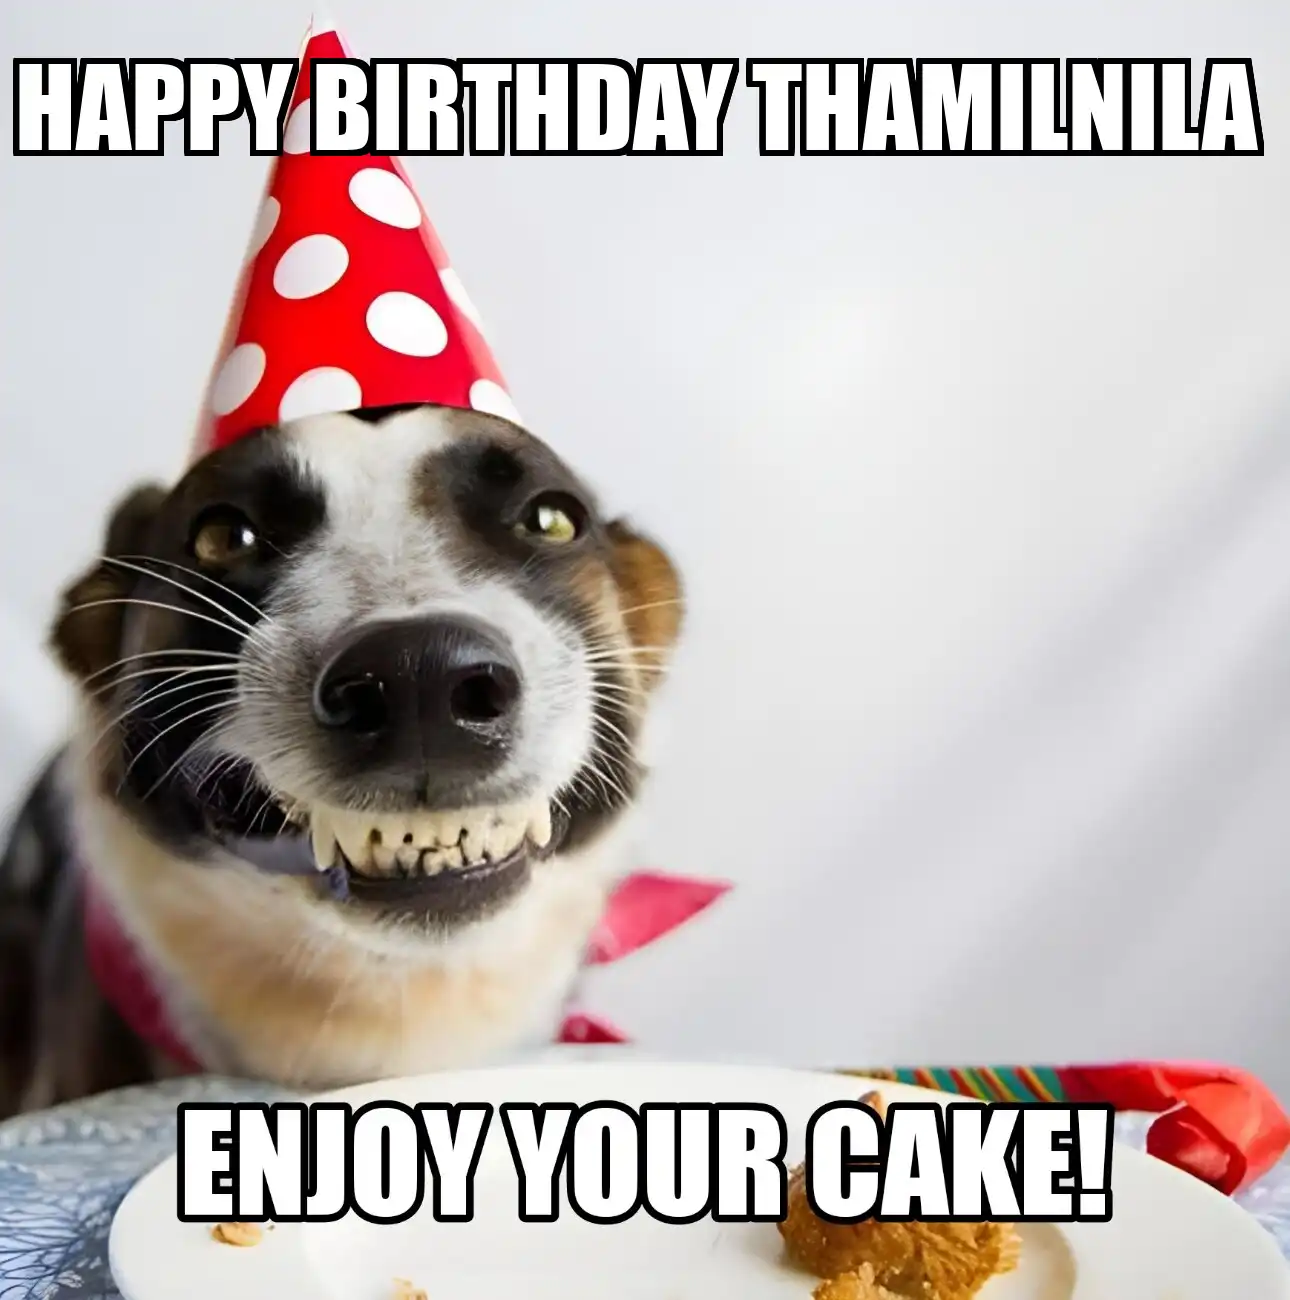 Happy Birthday Thamilnila Enjoy Your Cake Dog Meme